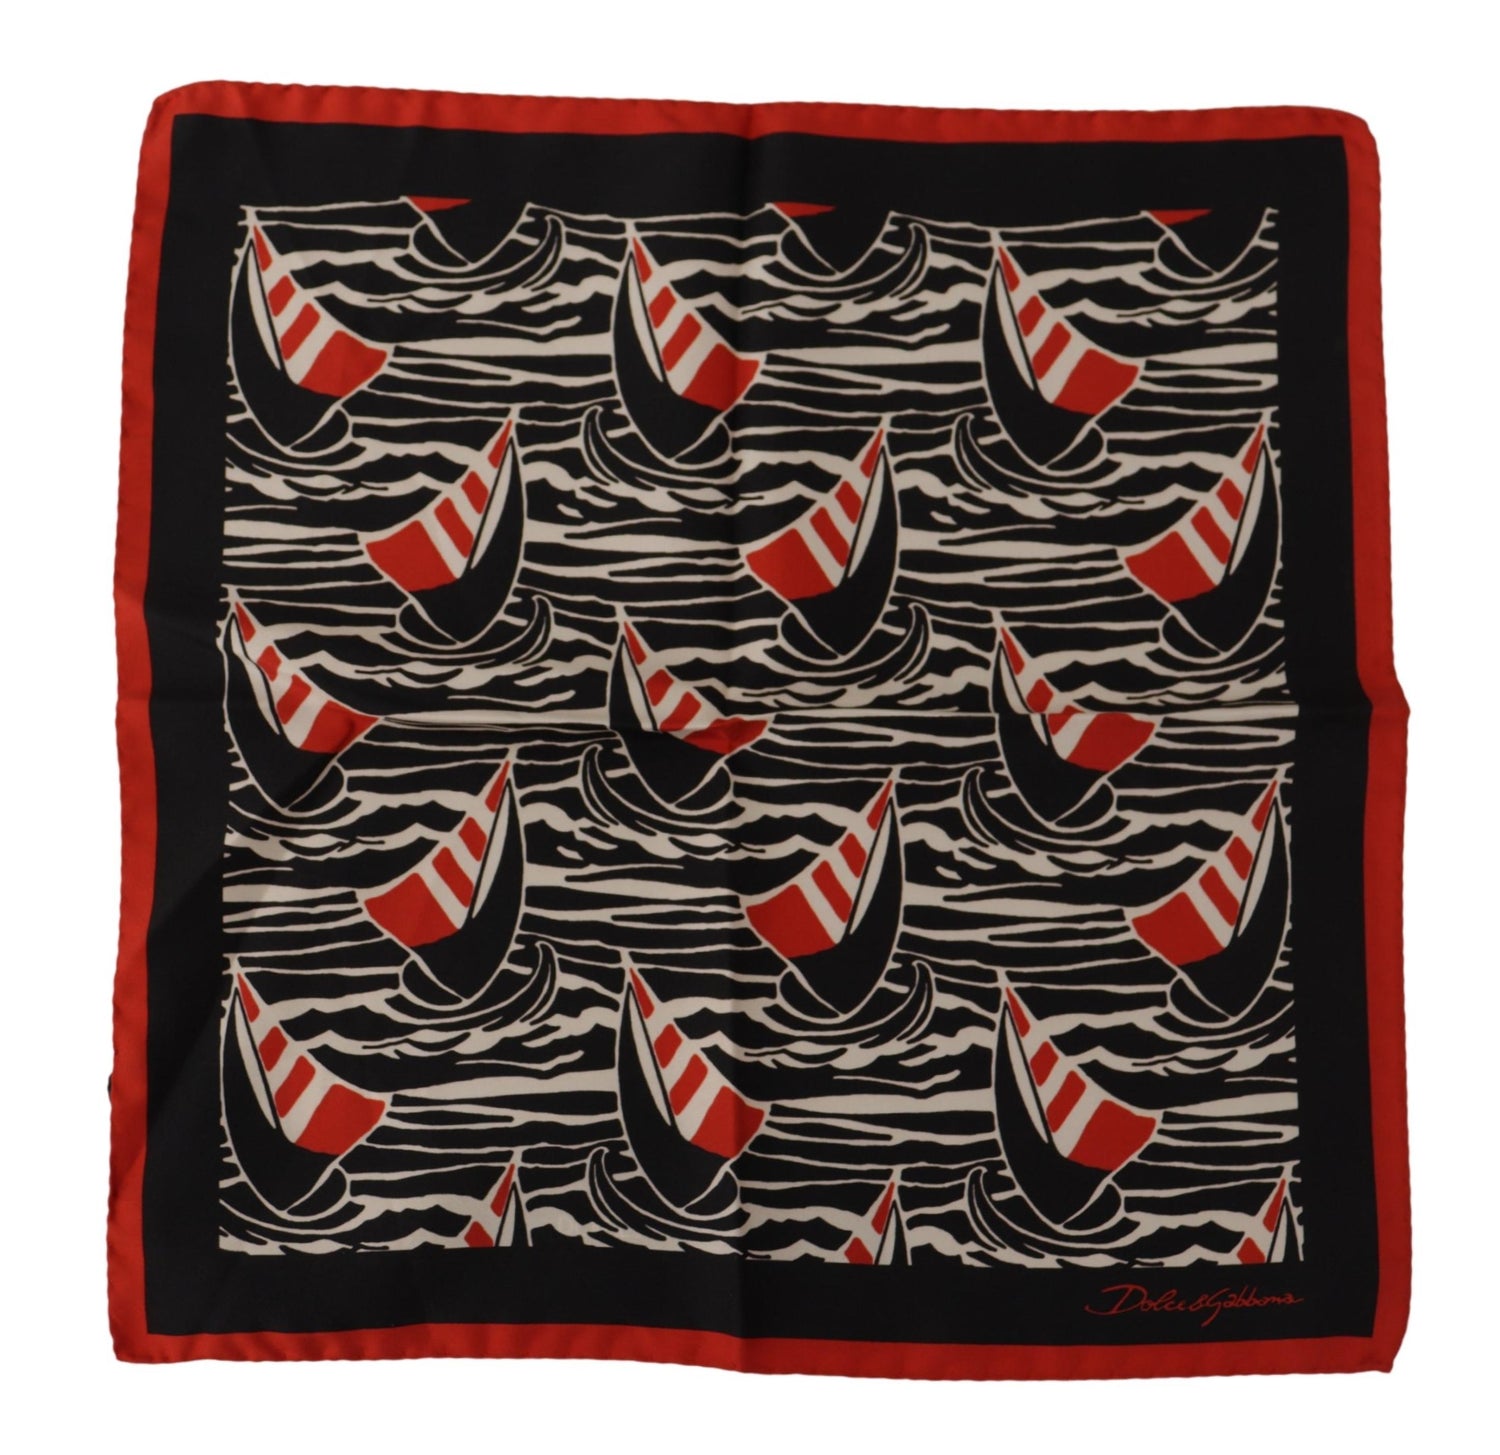 Dolce & Gabbana Black Red Sailboat Square Handkerchief Silk Scarf - DEA STILOSA MILANO